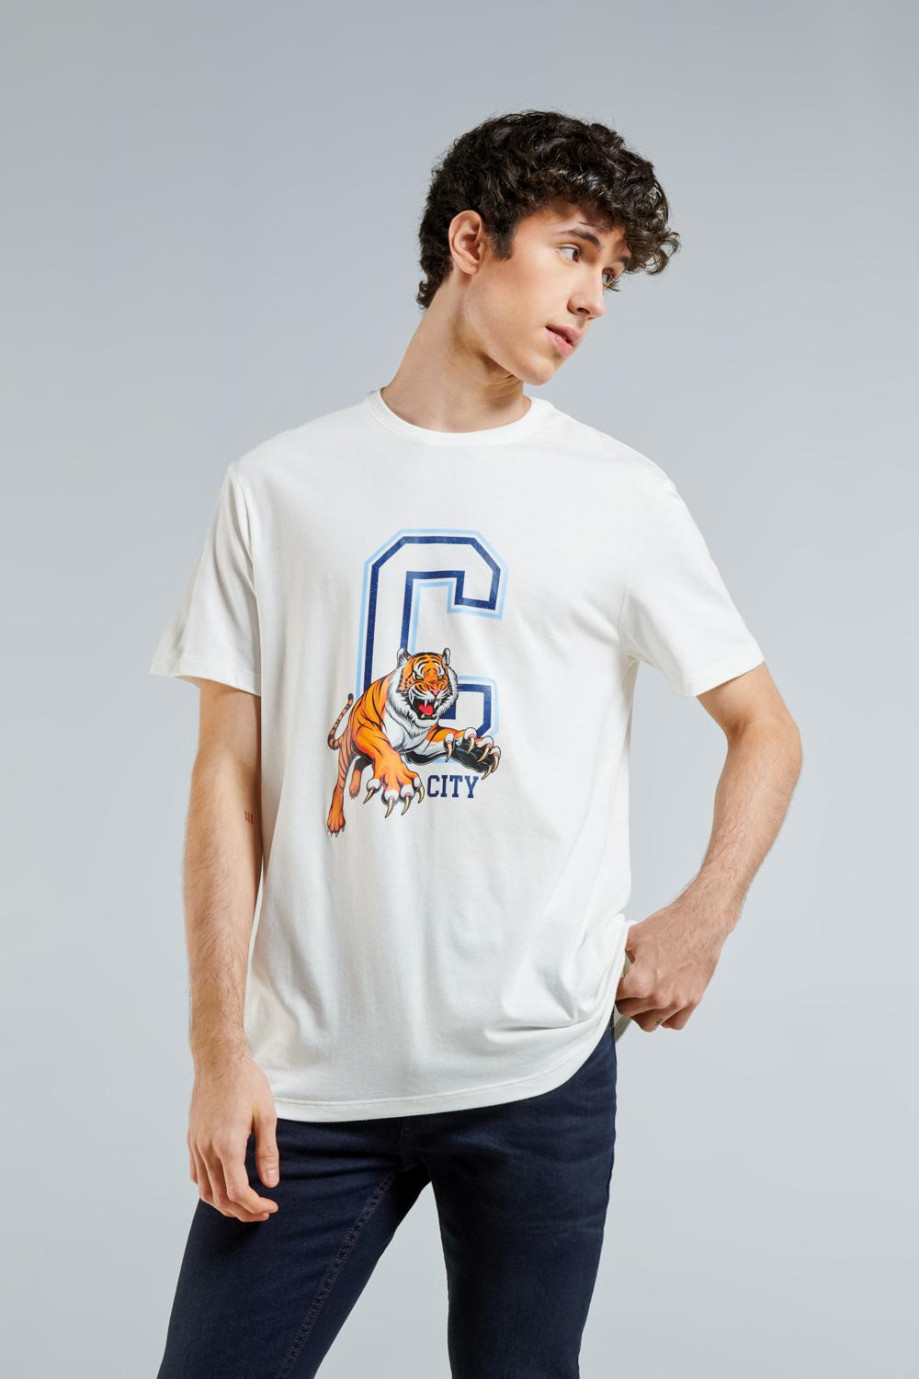 Camiseta unicolor con diseño college y cuello redondo